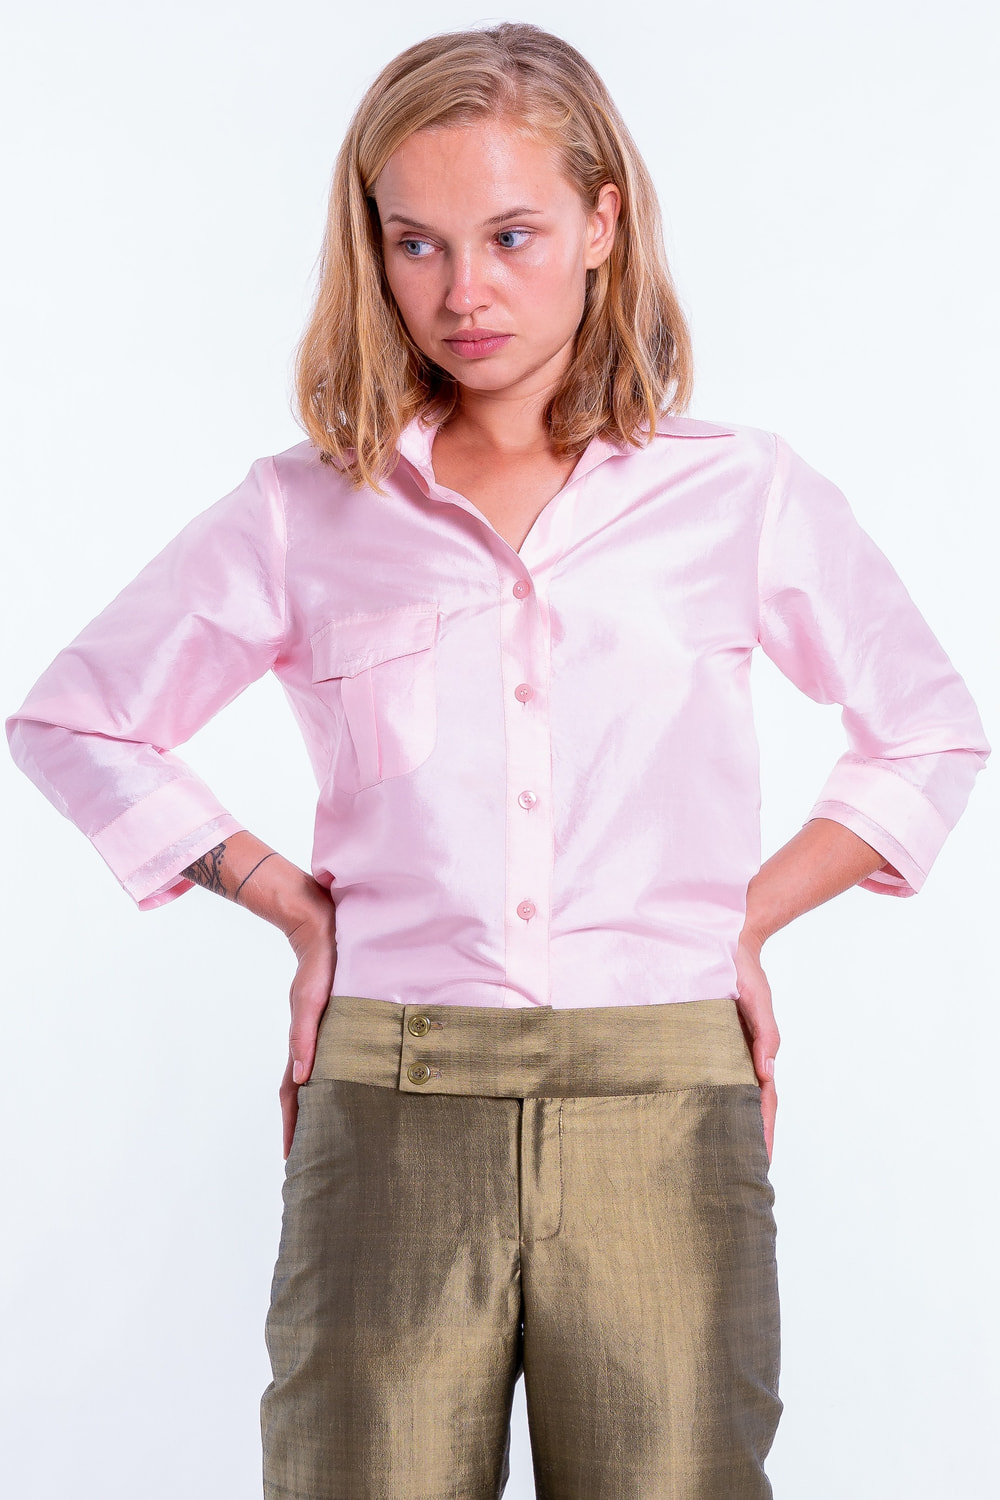 chemise en soie naturelle rose pâle, manches trois quarts et poche poitrine, pli couché dans le milieu du dos